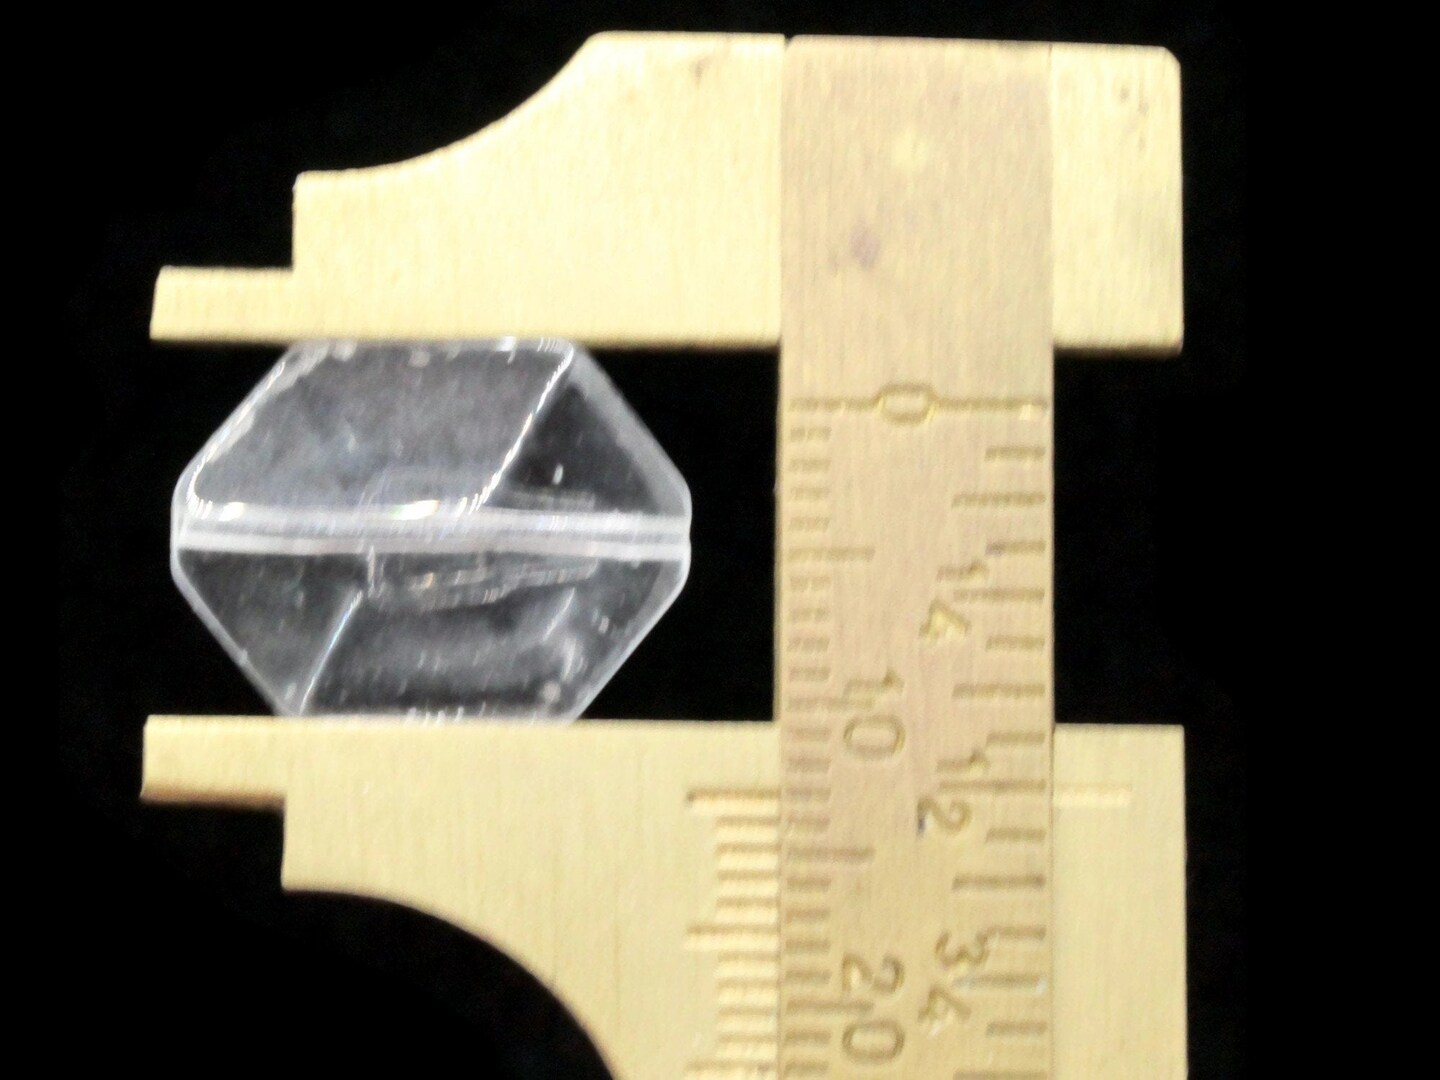 20 17mm Clear Glass Hexagon Beads